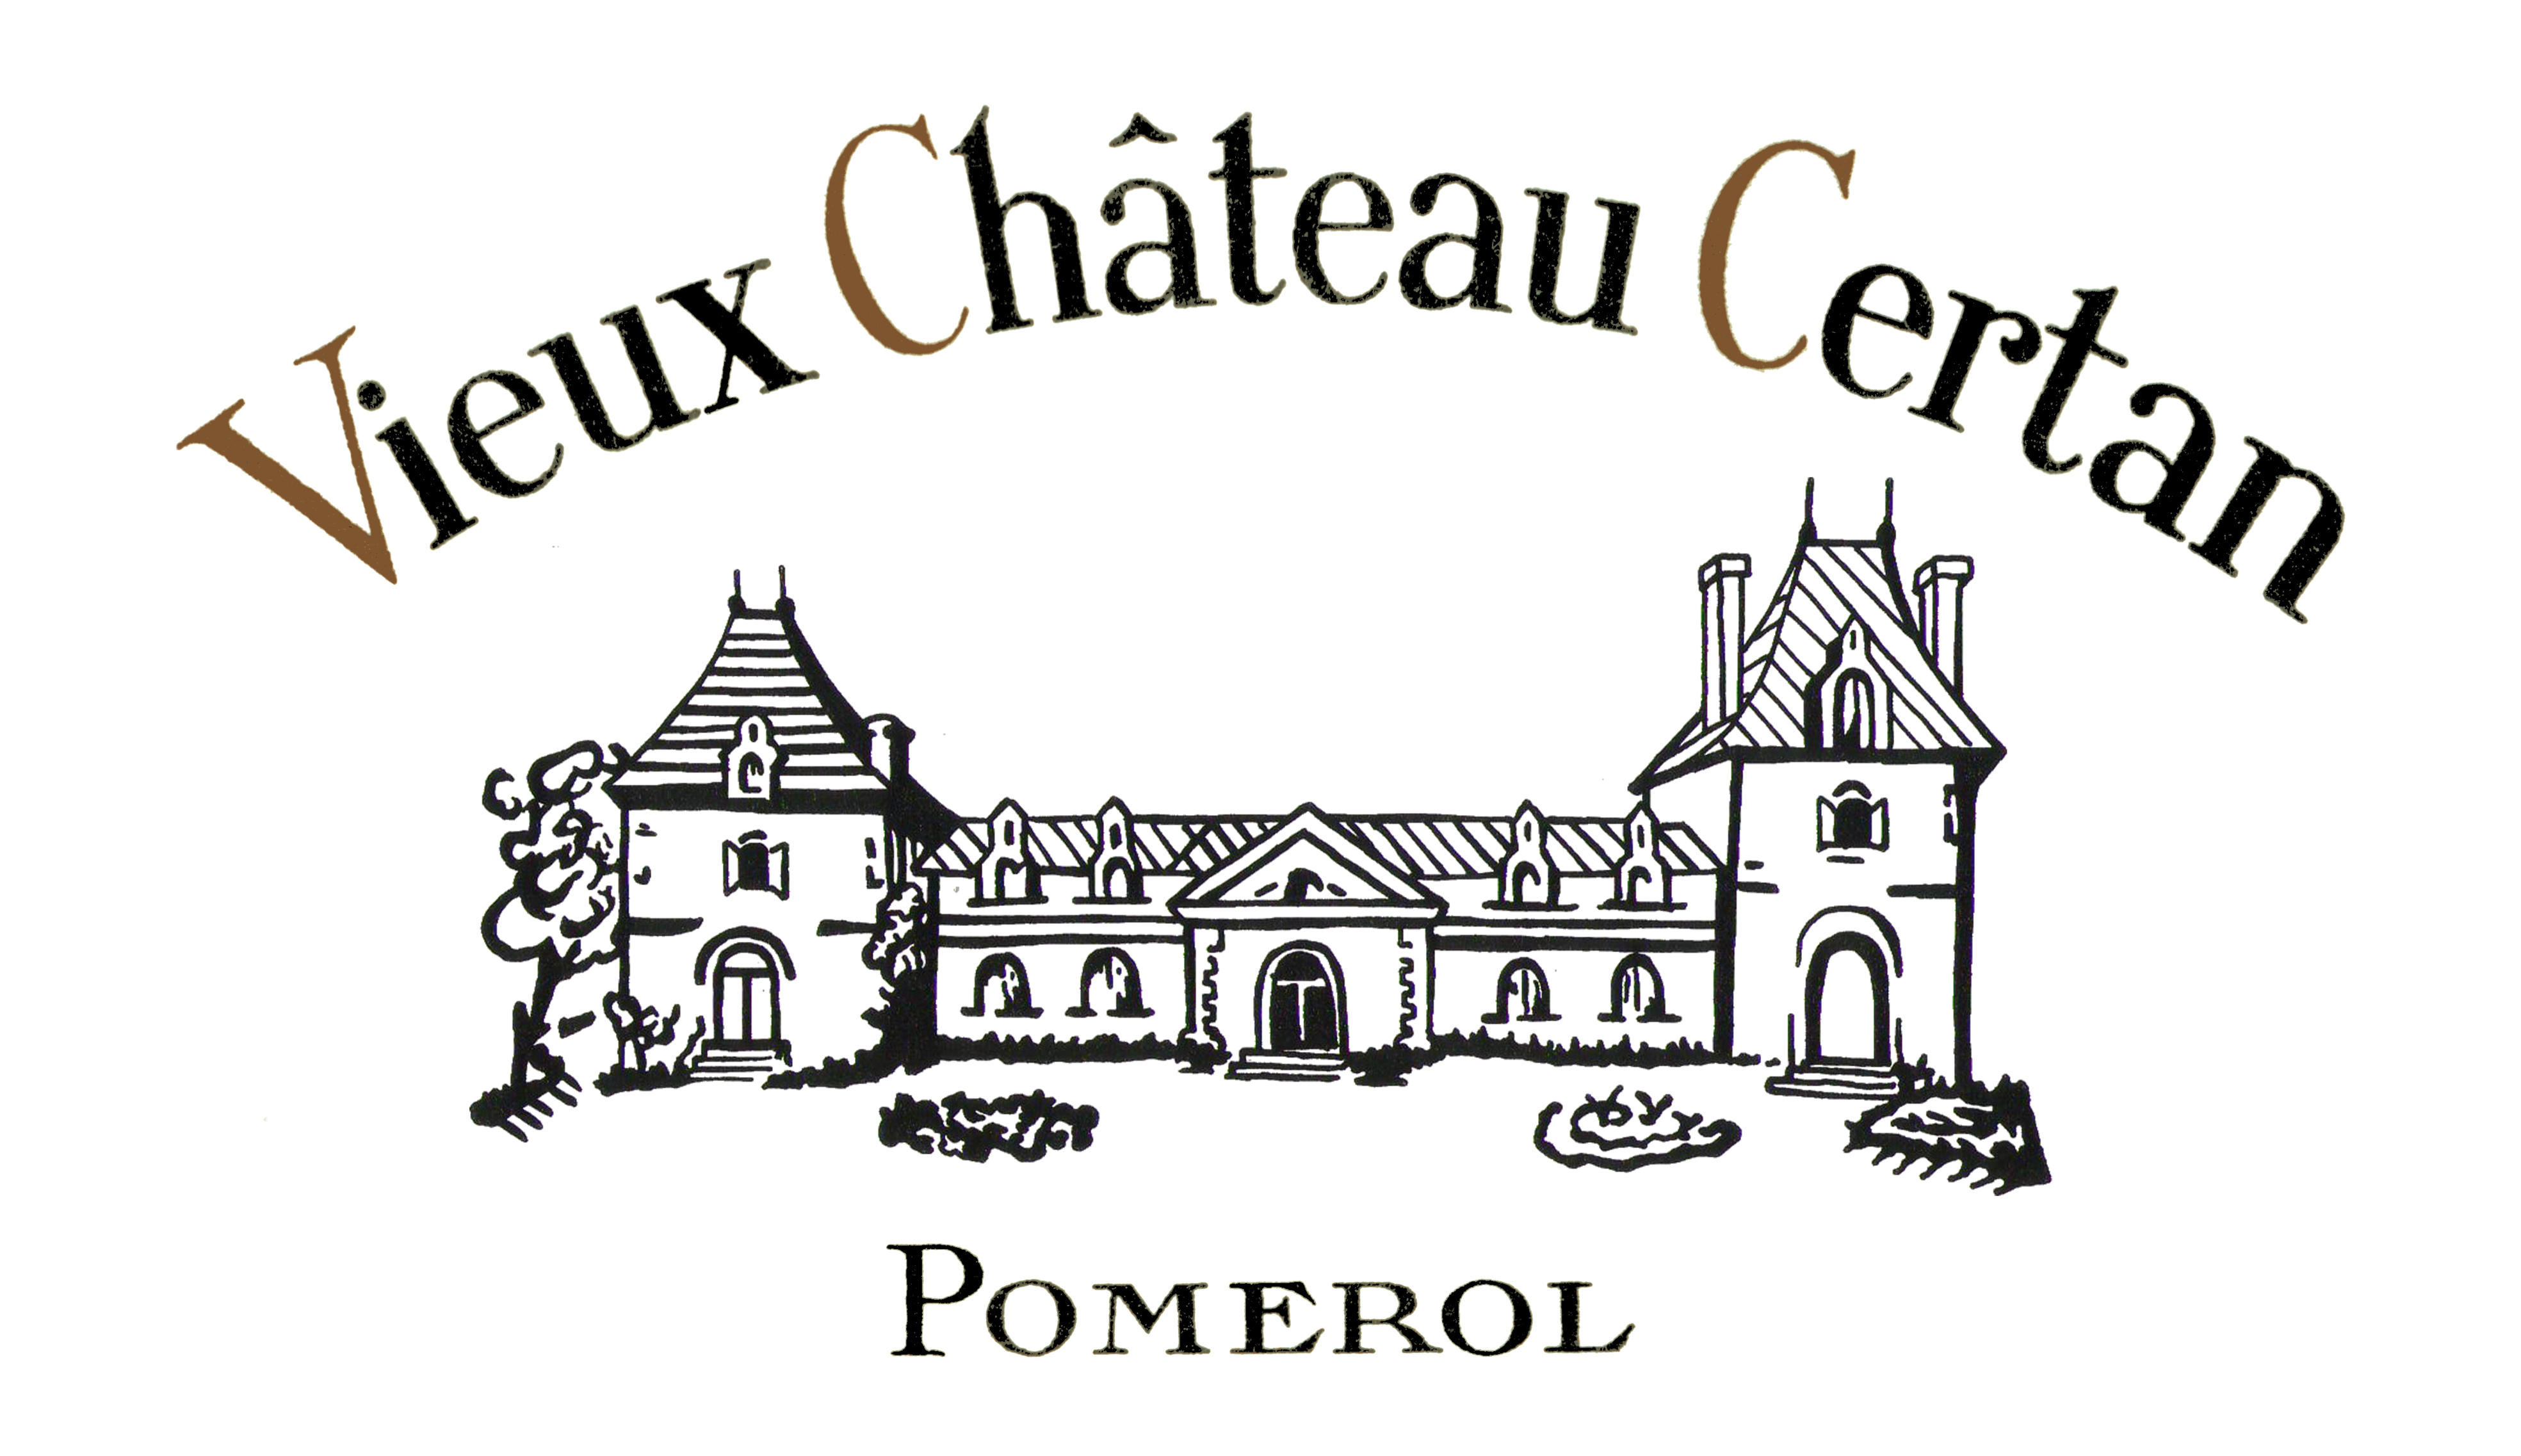 logo Vieux Chateau Certan